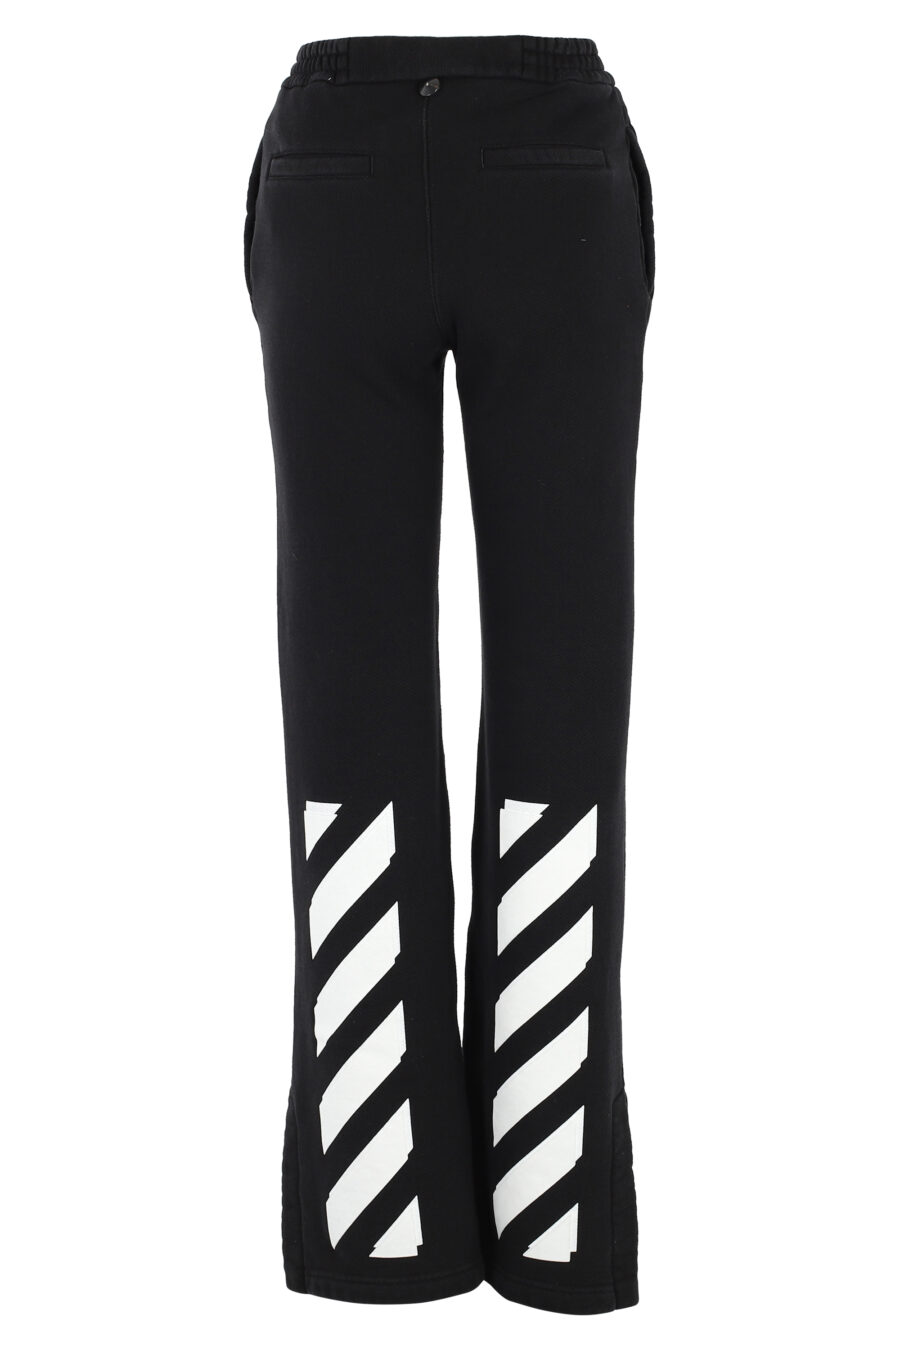 Pantalon de chandal negro con logo blanco "Diag" - IMG 5062